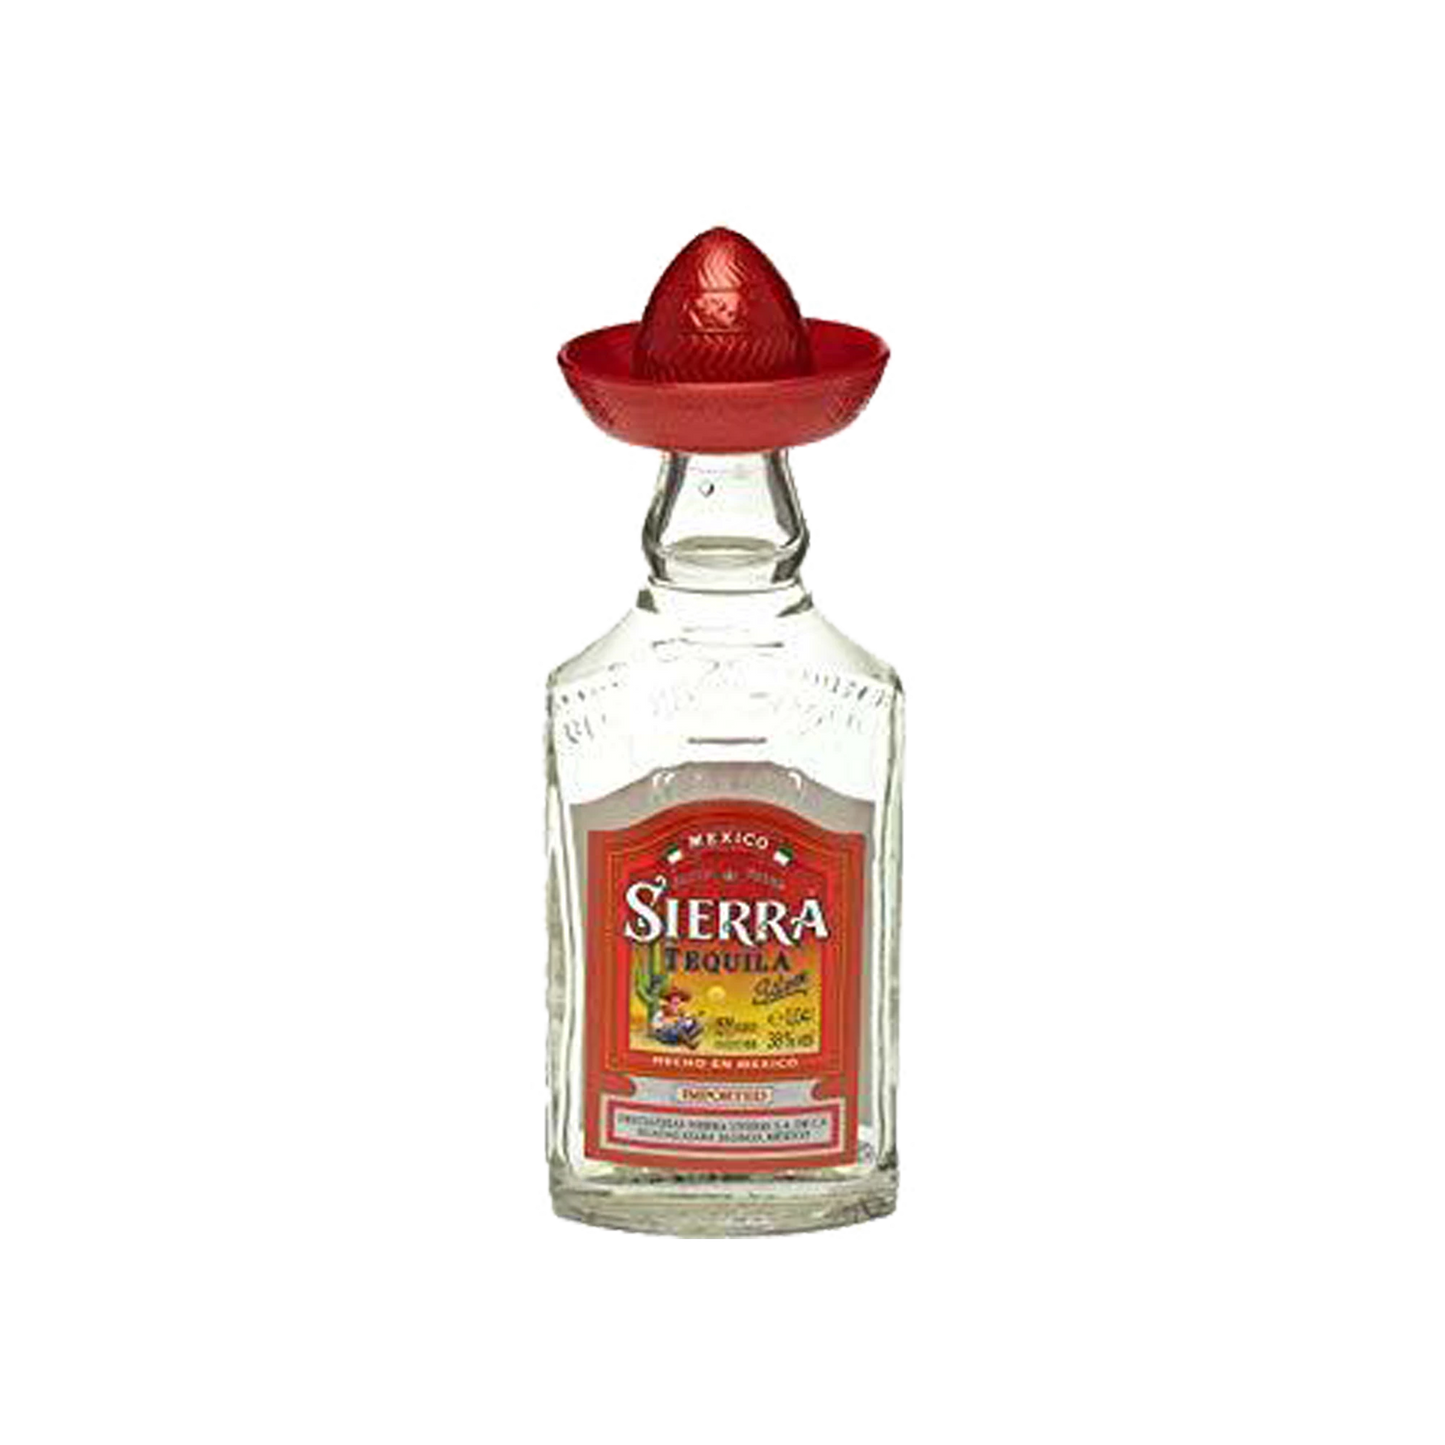 Sierra Silver Tequila 40ml